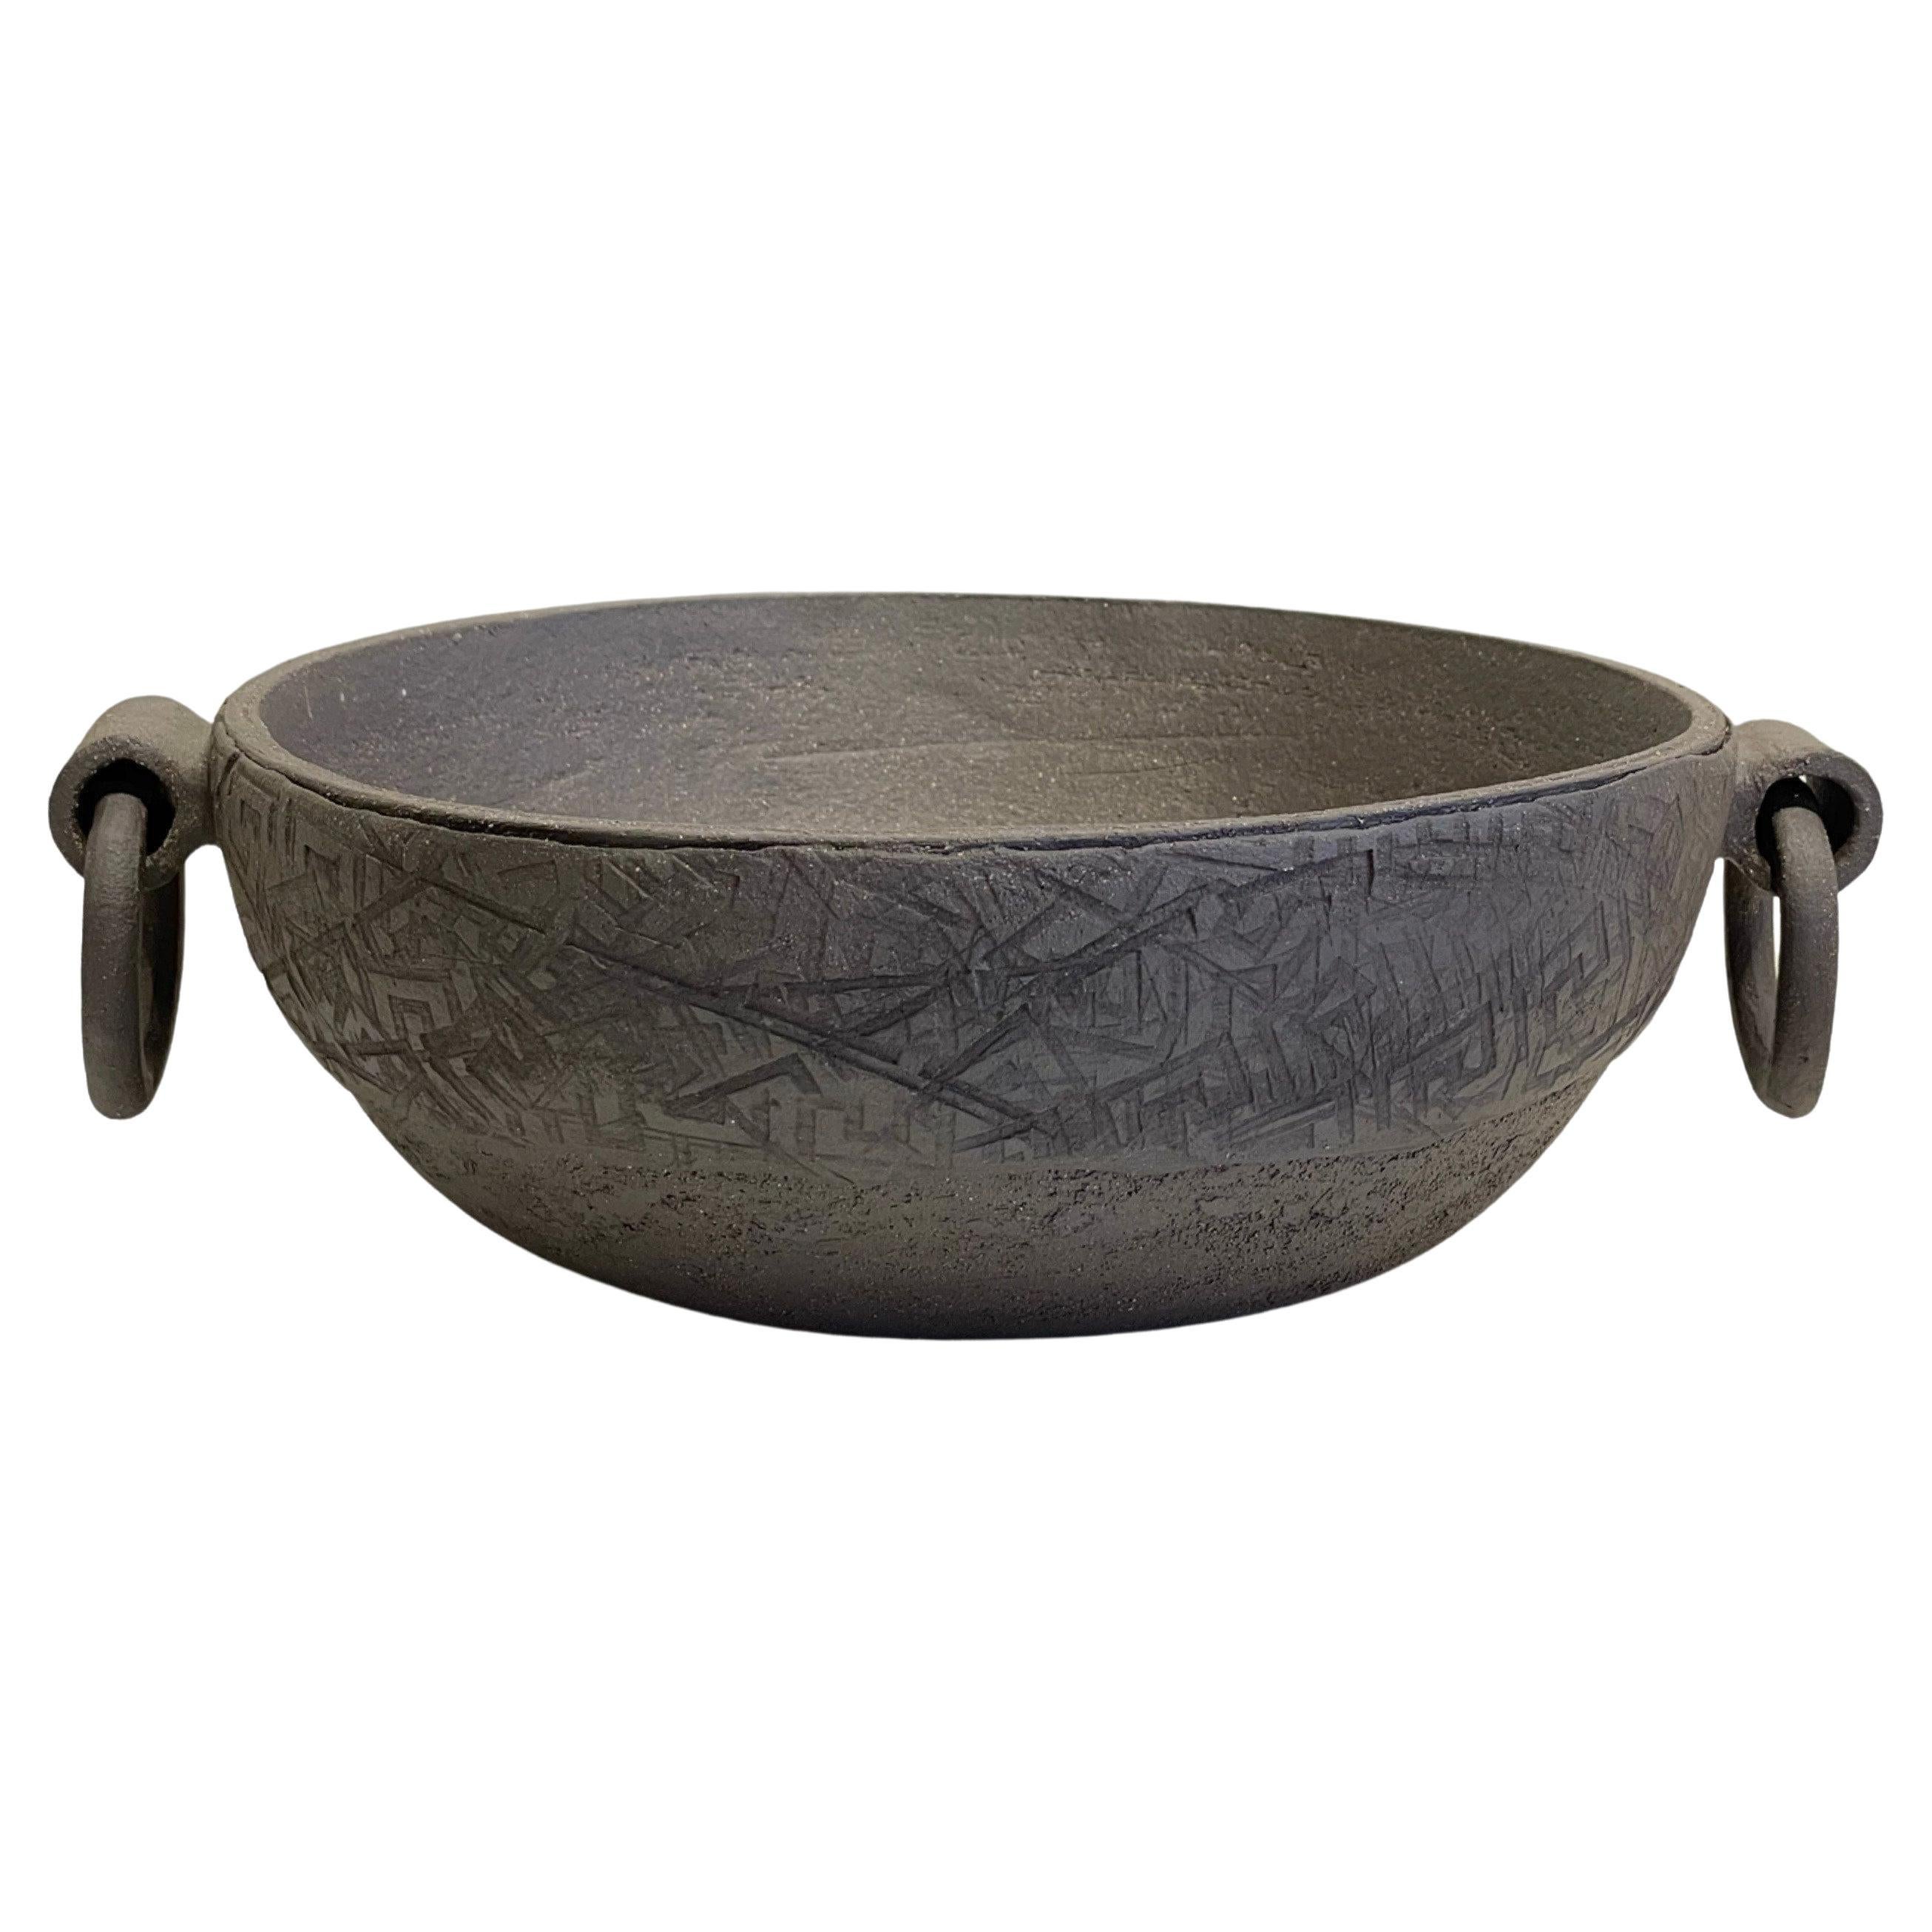 Artisanal Ceramic Centerpiece, Handcrafted Decorative Bowl, Dark Brown